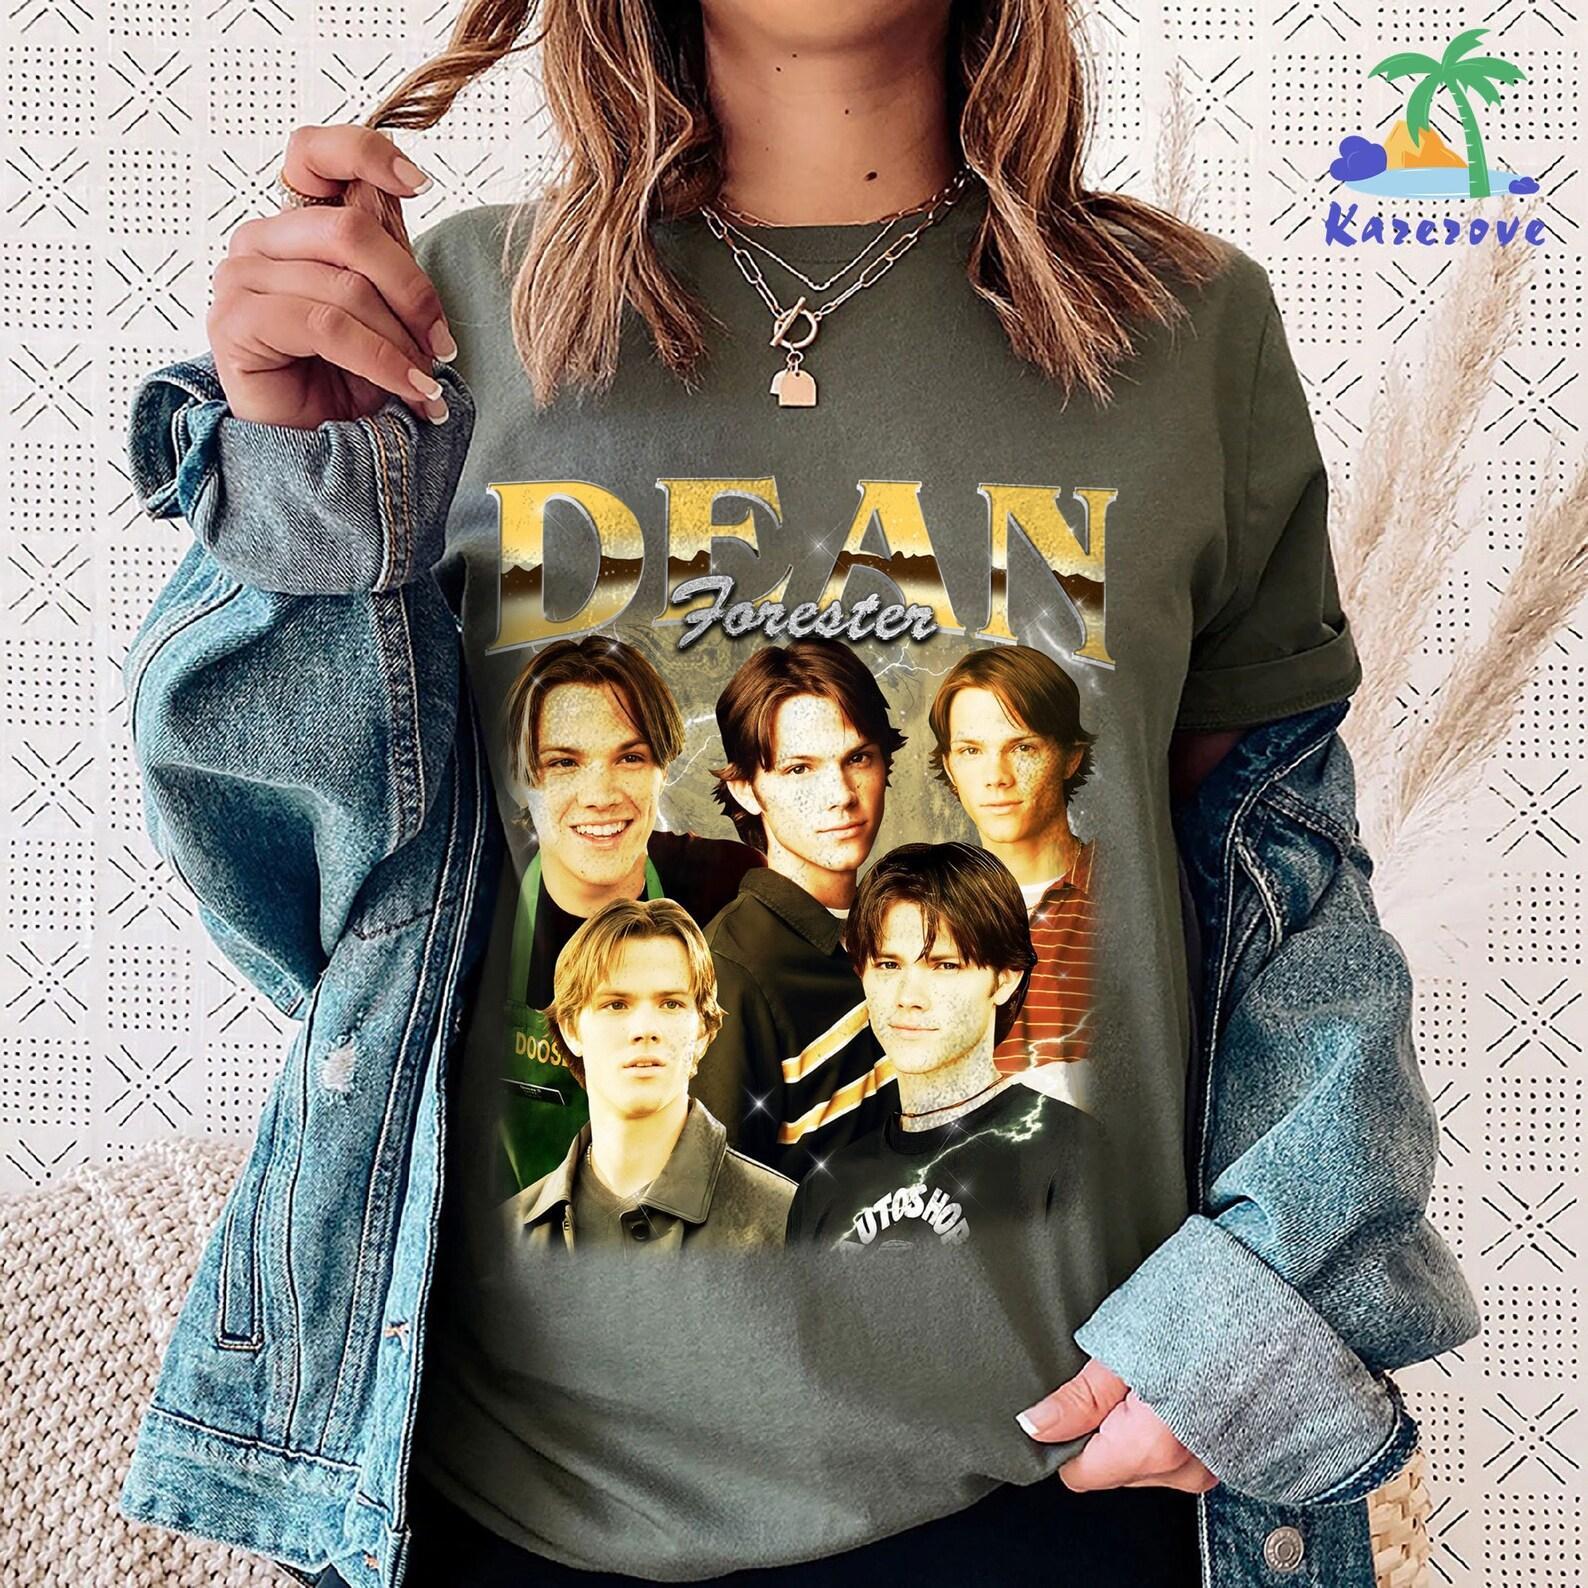 ディーン・フォレスターのさまざまな写真が描かれたTシャツ